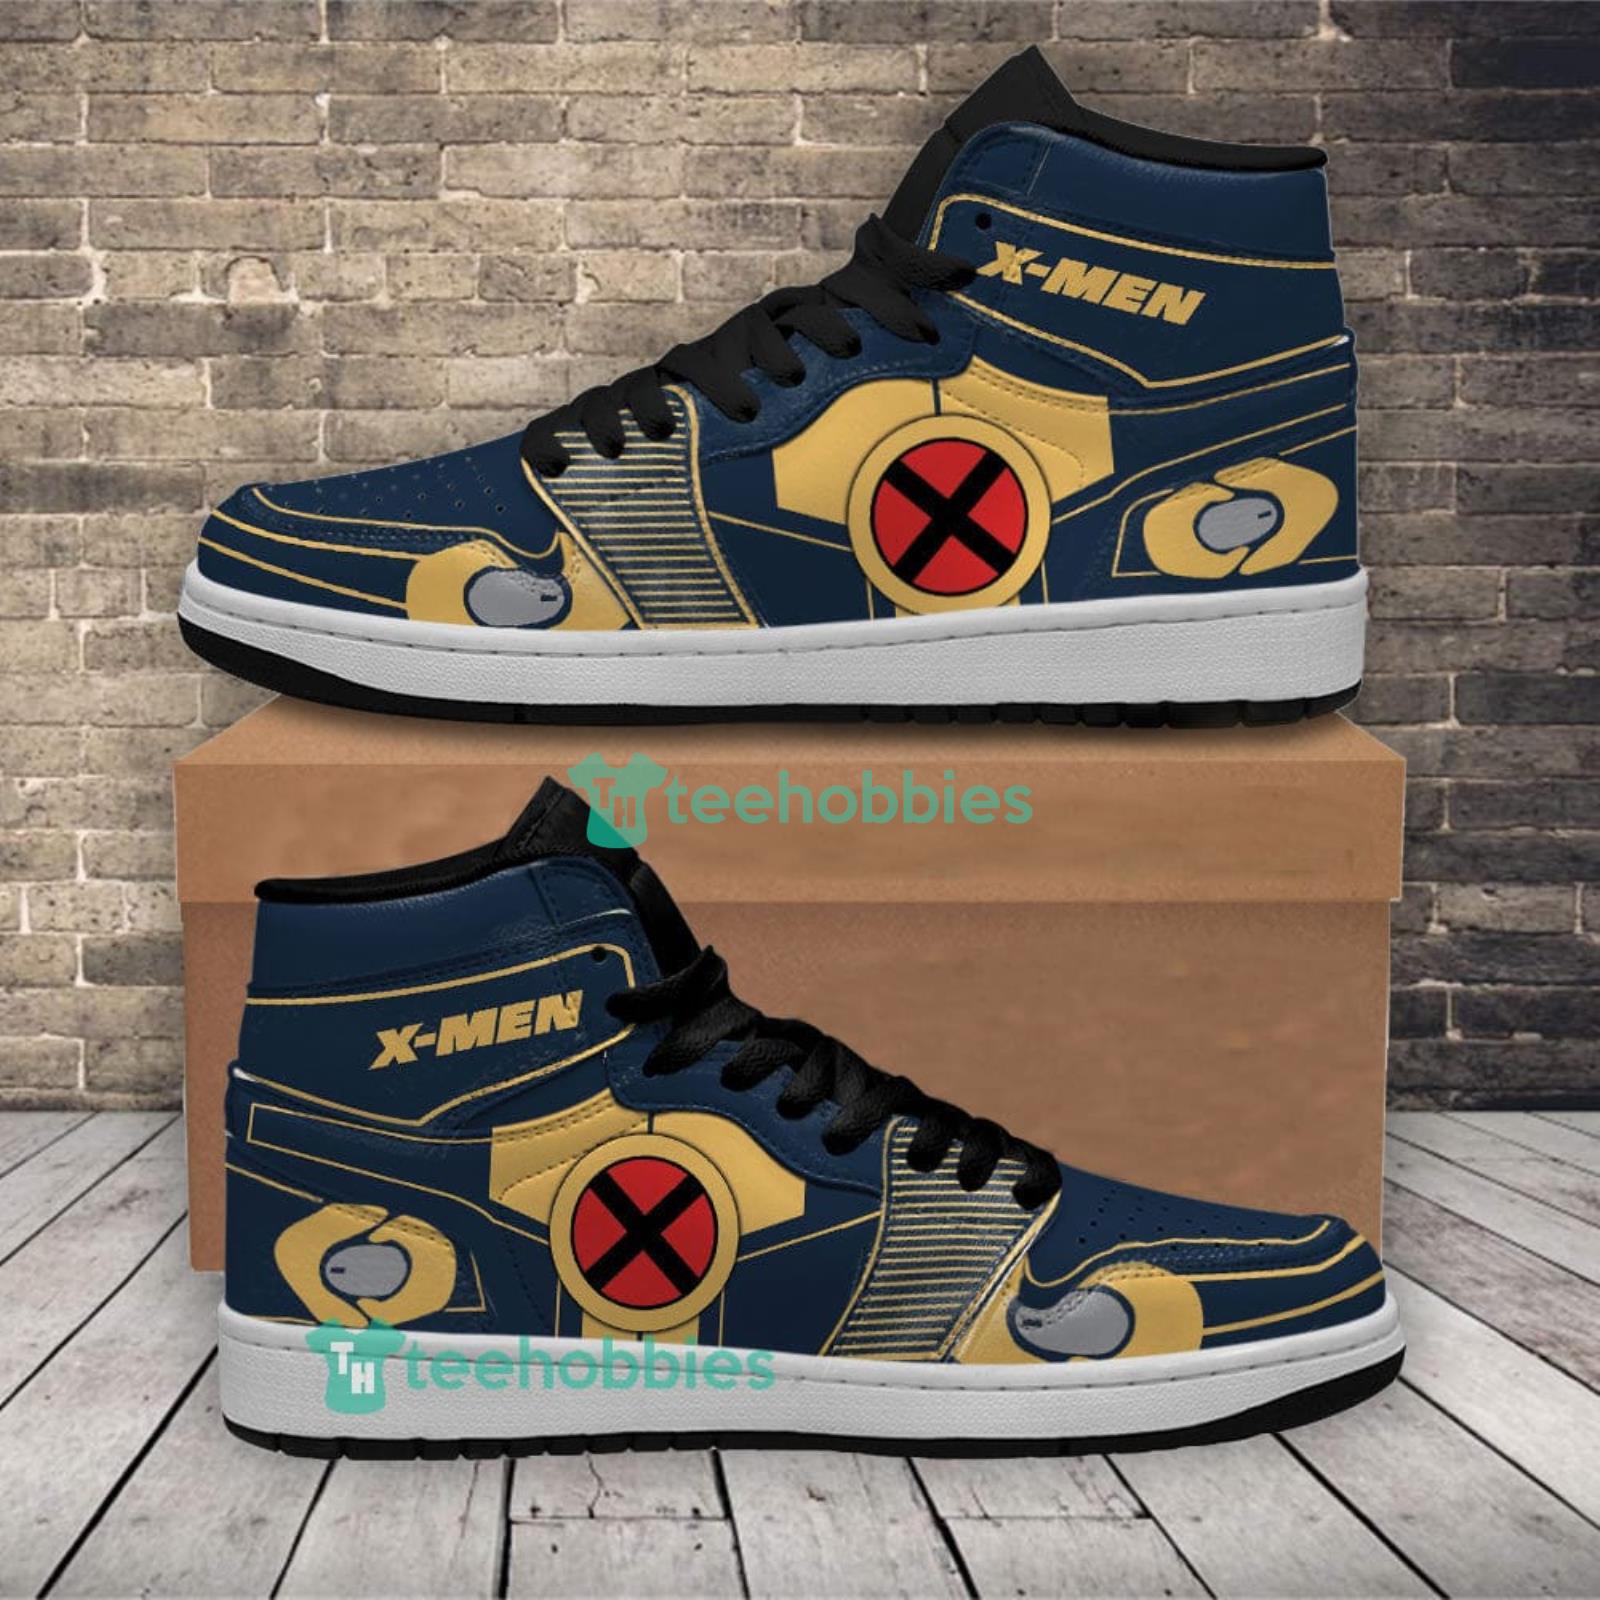 X Men Air Jordan Hightop Shoes Sneakers For Men And Women Super Heroes Sneakers Product Photo 1